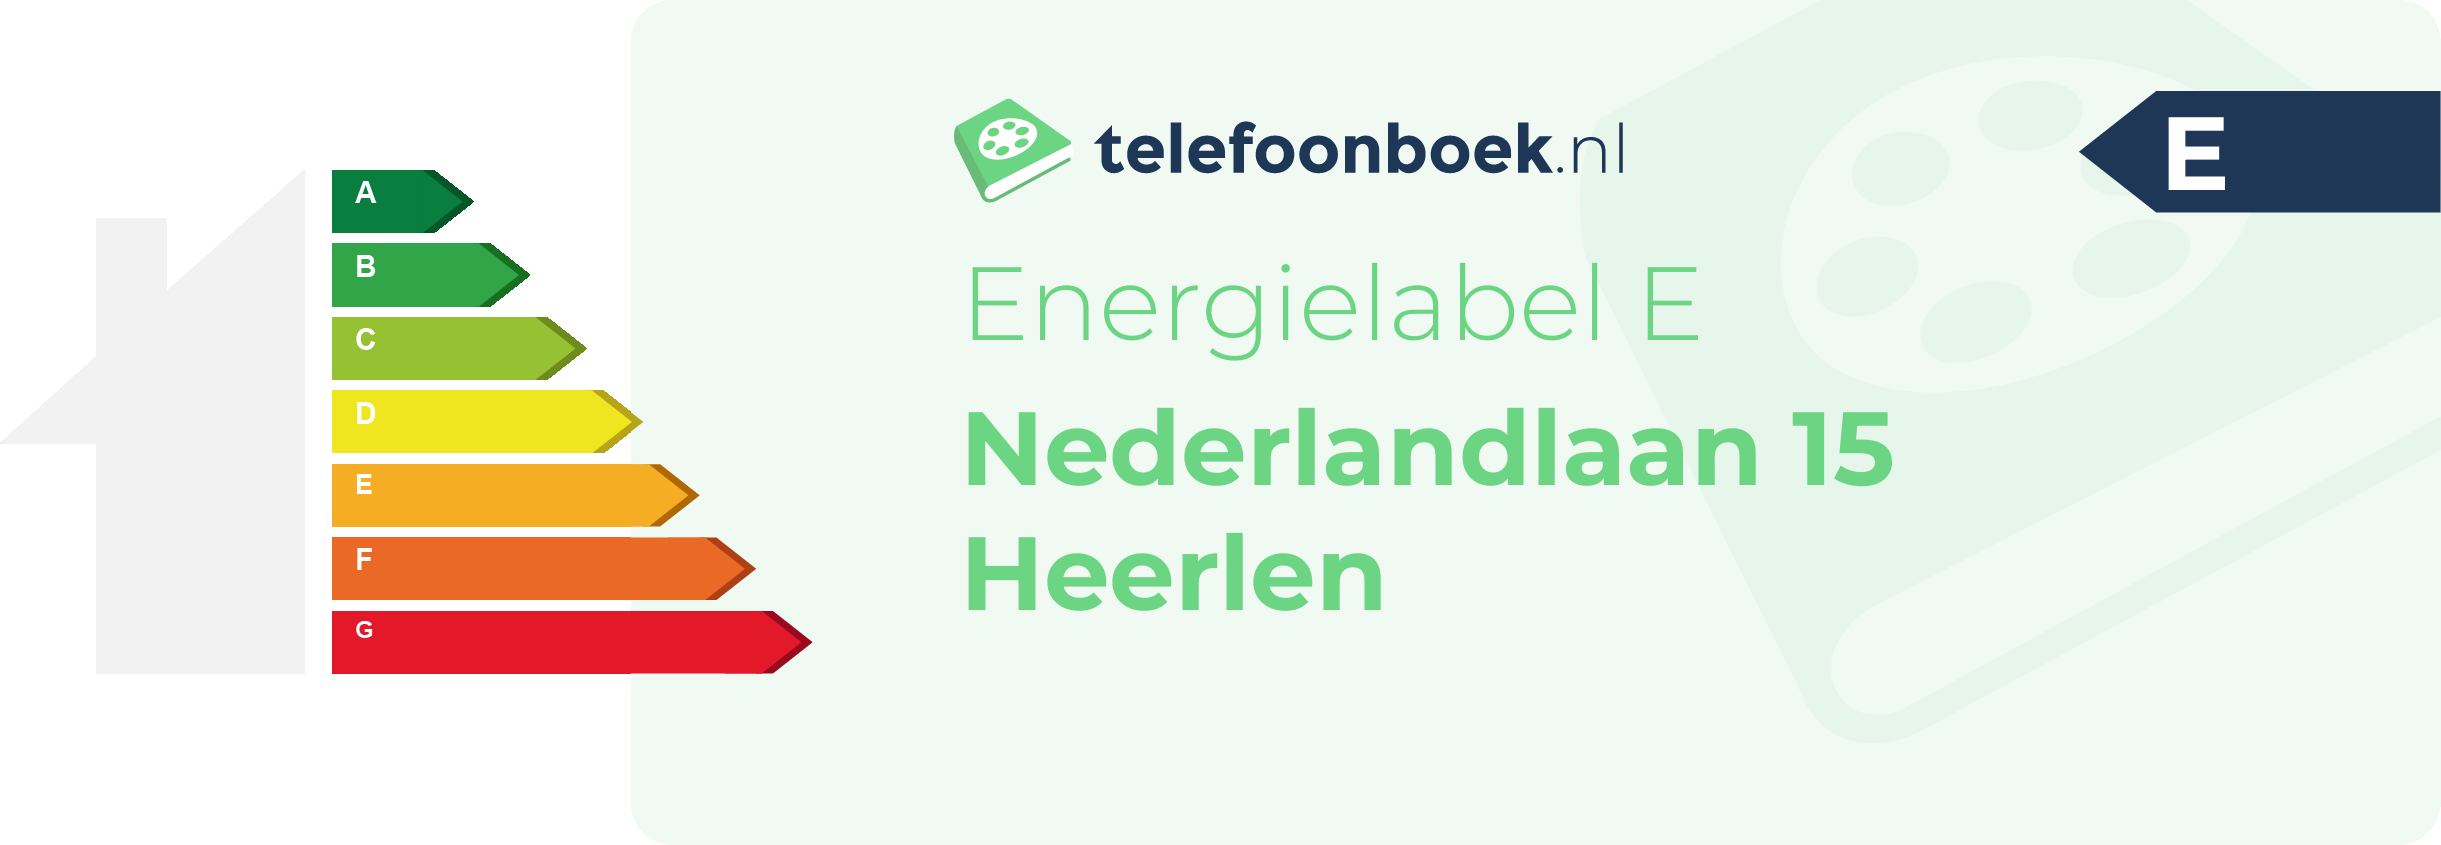 Energielabel Nederlandlaan 15 Heerlen